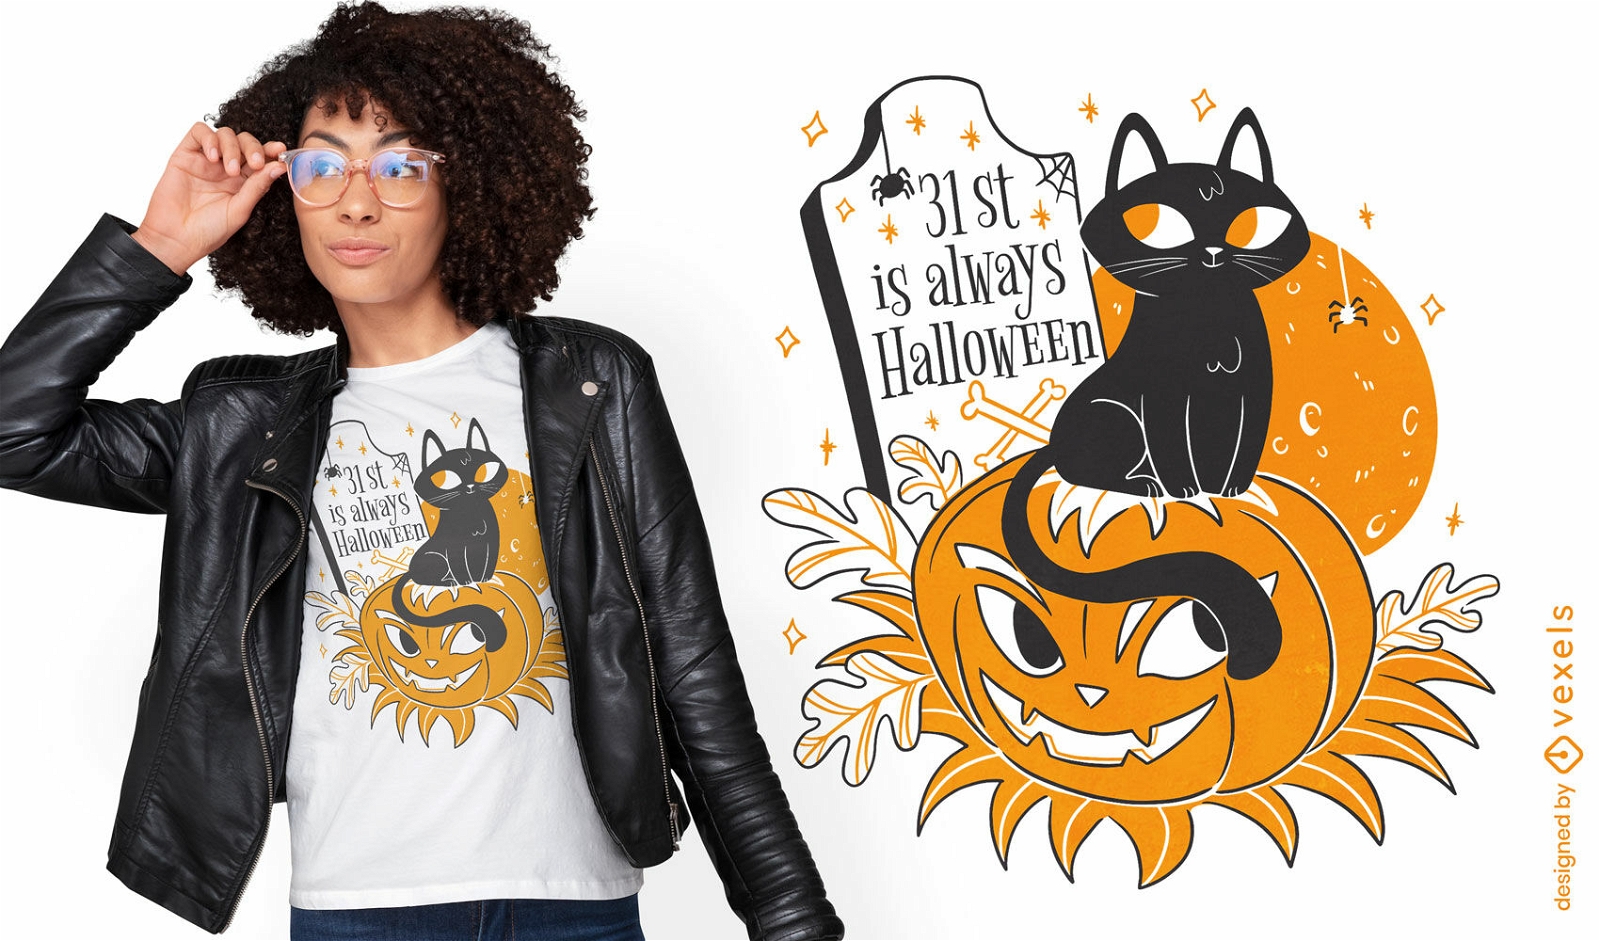 S??e schwarze Katze im Halloween-T-Shirt-Design